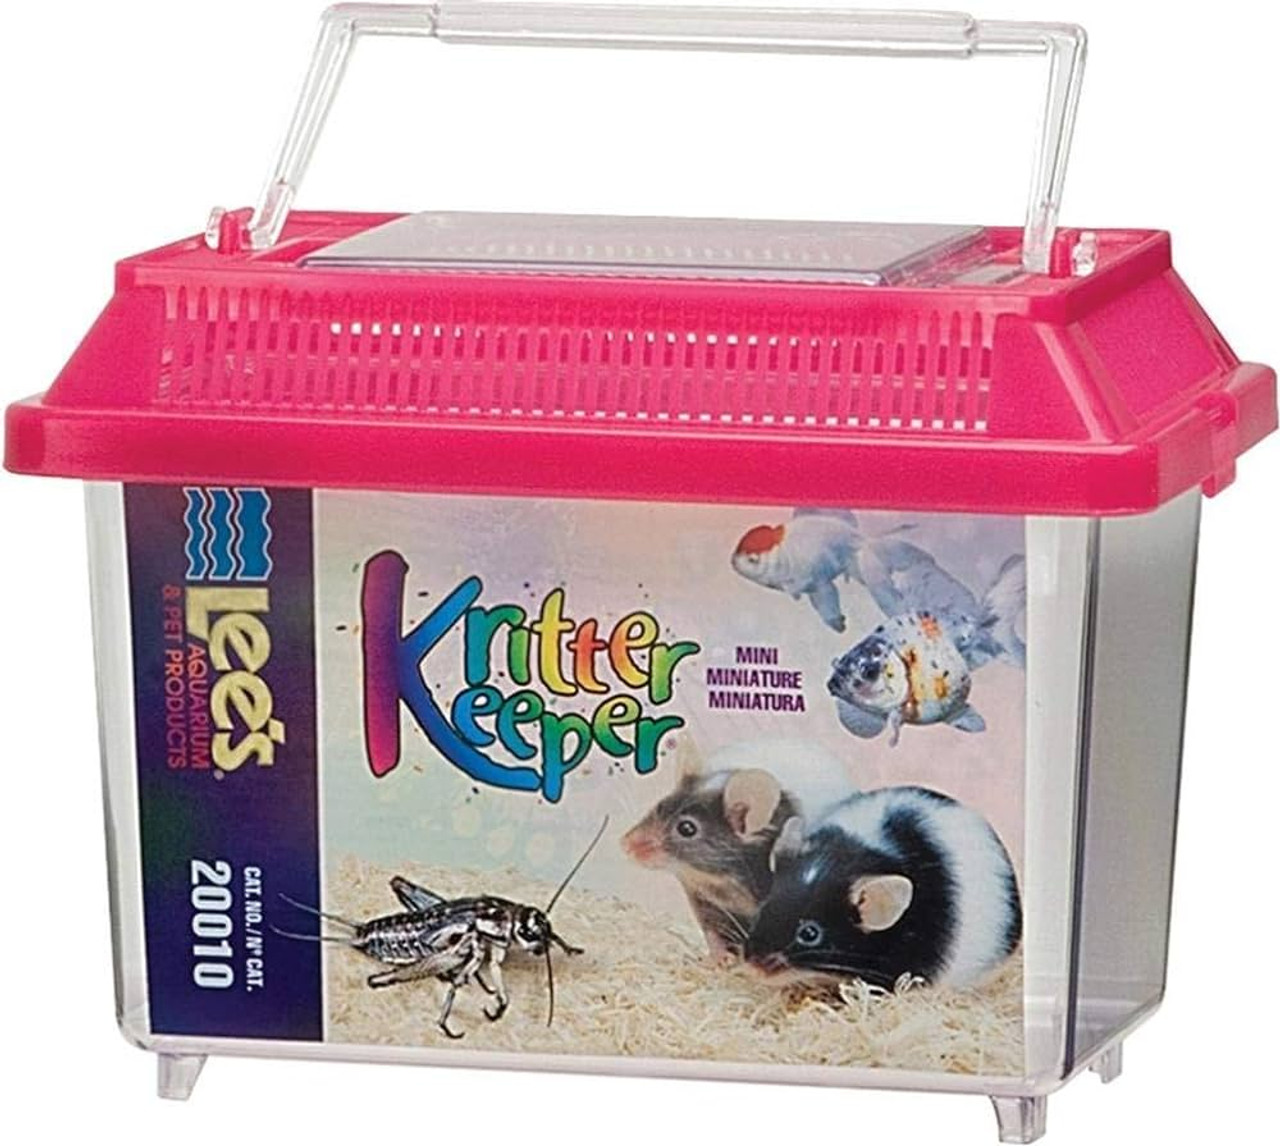 Mini Kritter Keeper for transport